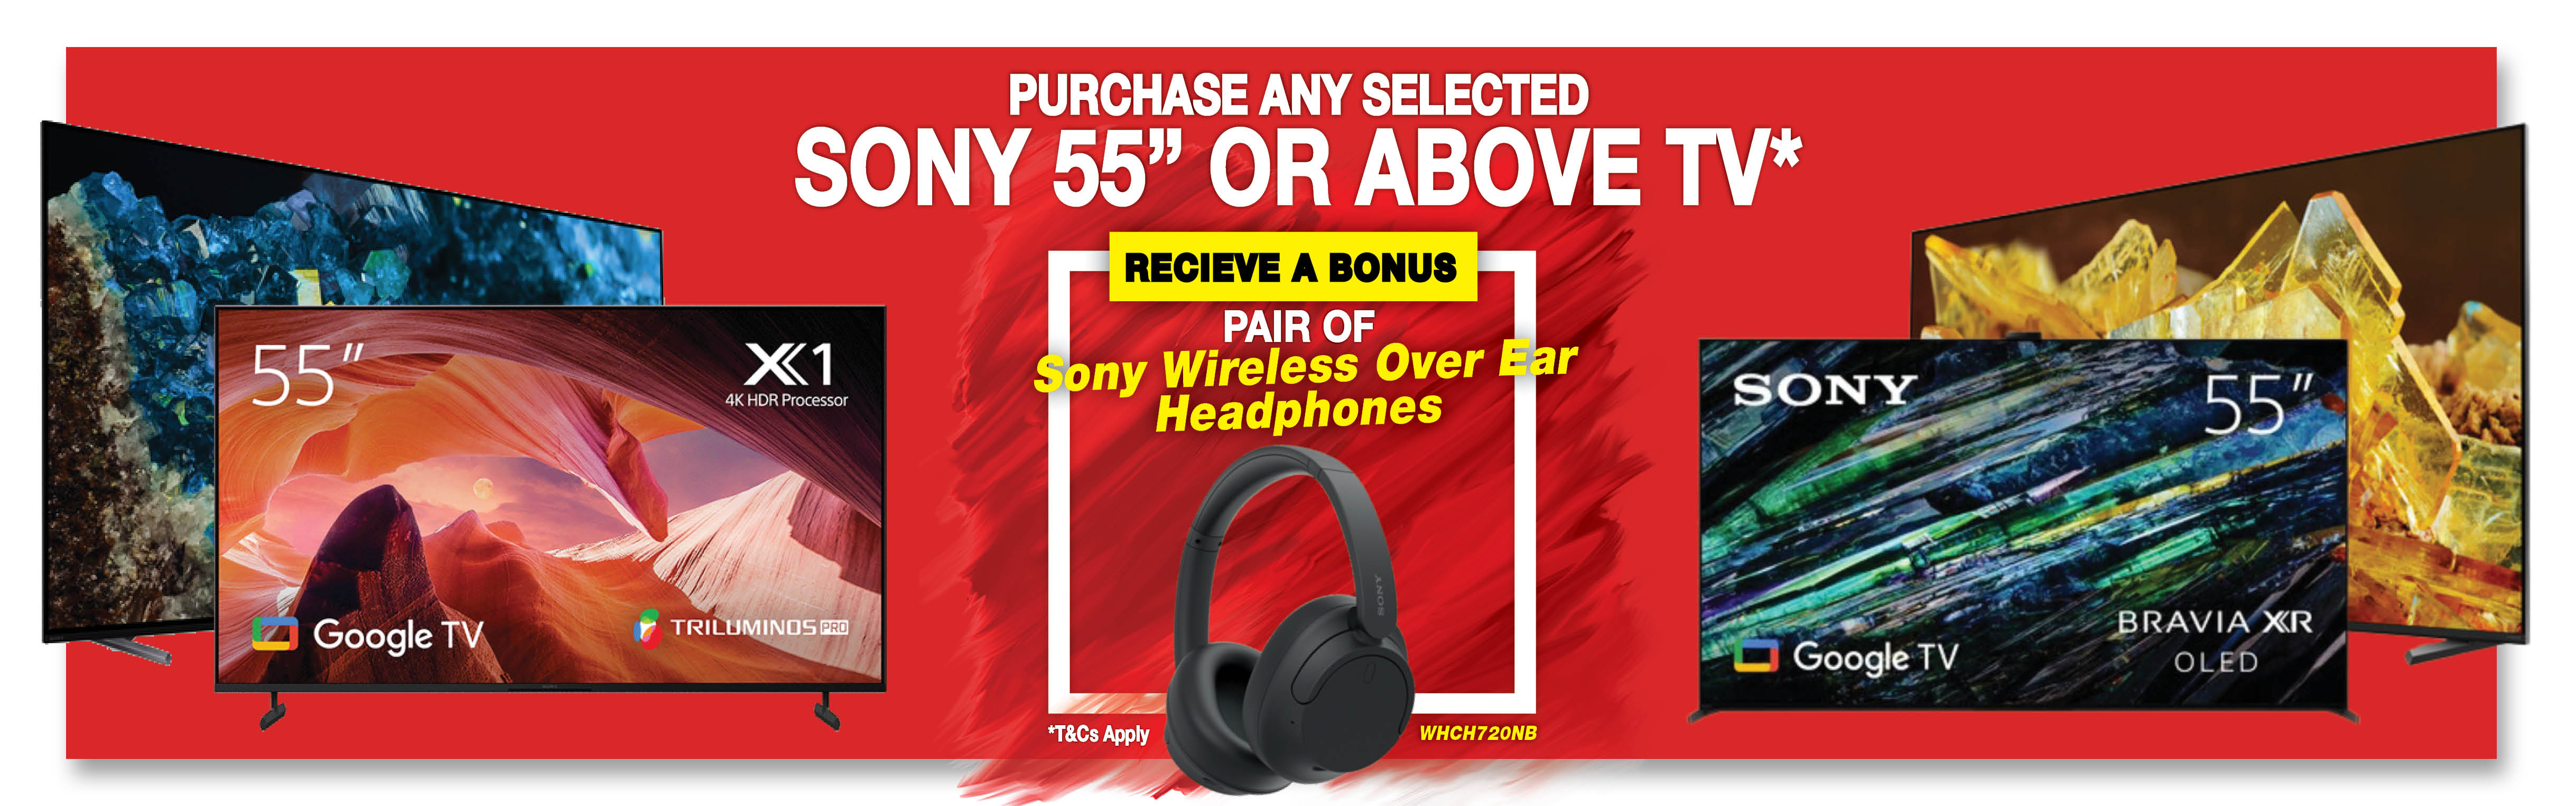 Sony 55 tv bonus offer artwork